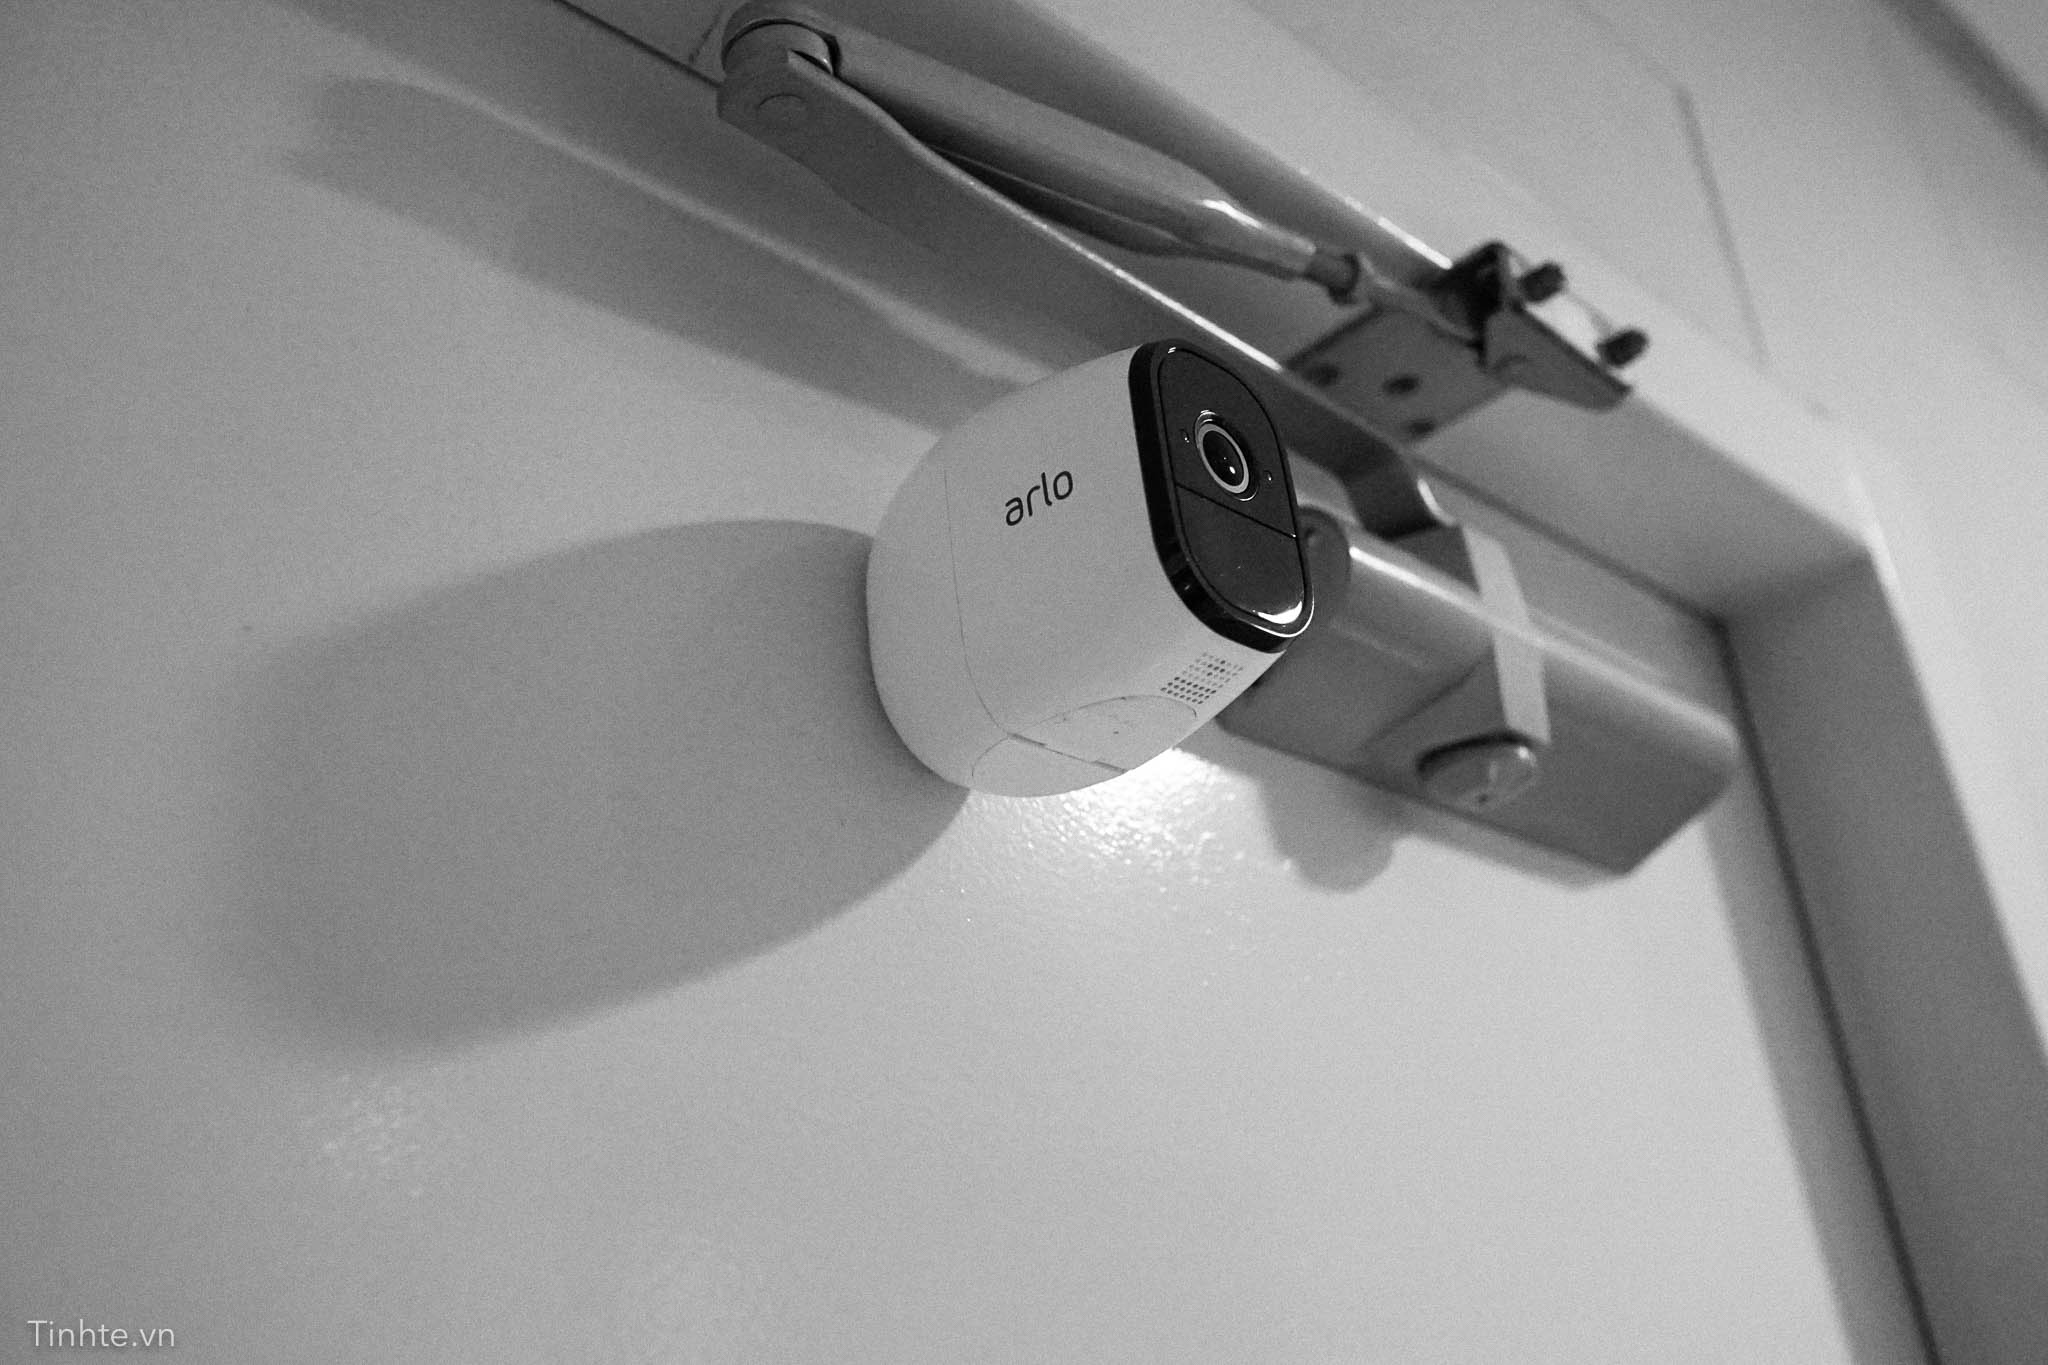 Netgear Arlo Pro: camera an ninh không dây đúng nghĩa, chống mưa gió, pin 6 tháng sạc 1 lần 4195387_tinhte-netgear-arlo-4